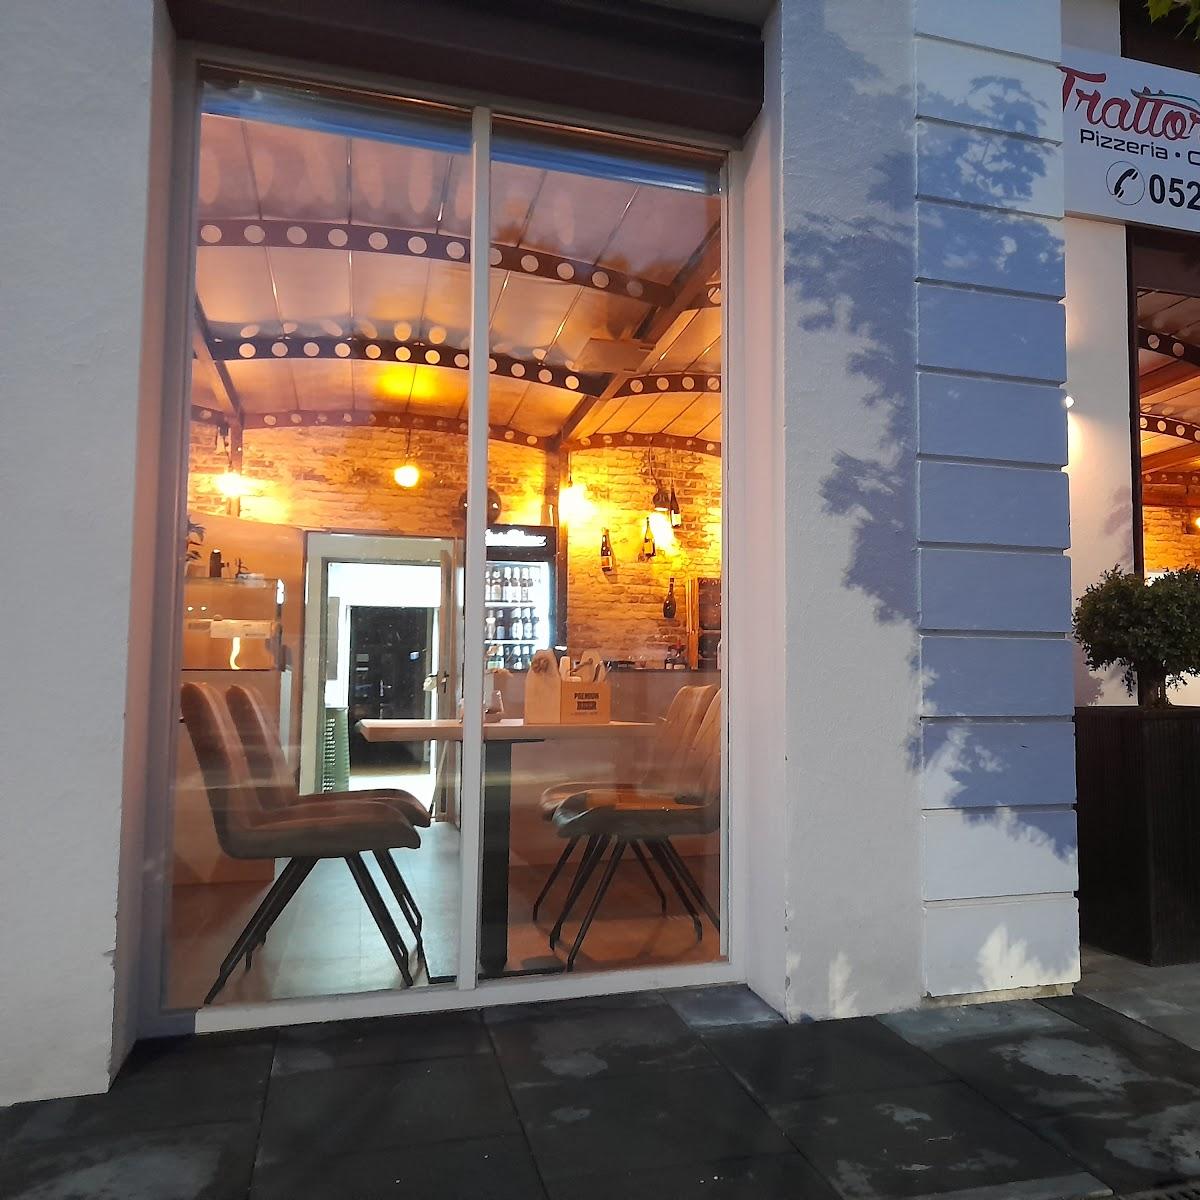 Restaurant "Trattoria Werther" in Werther (Westfalen)